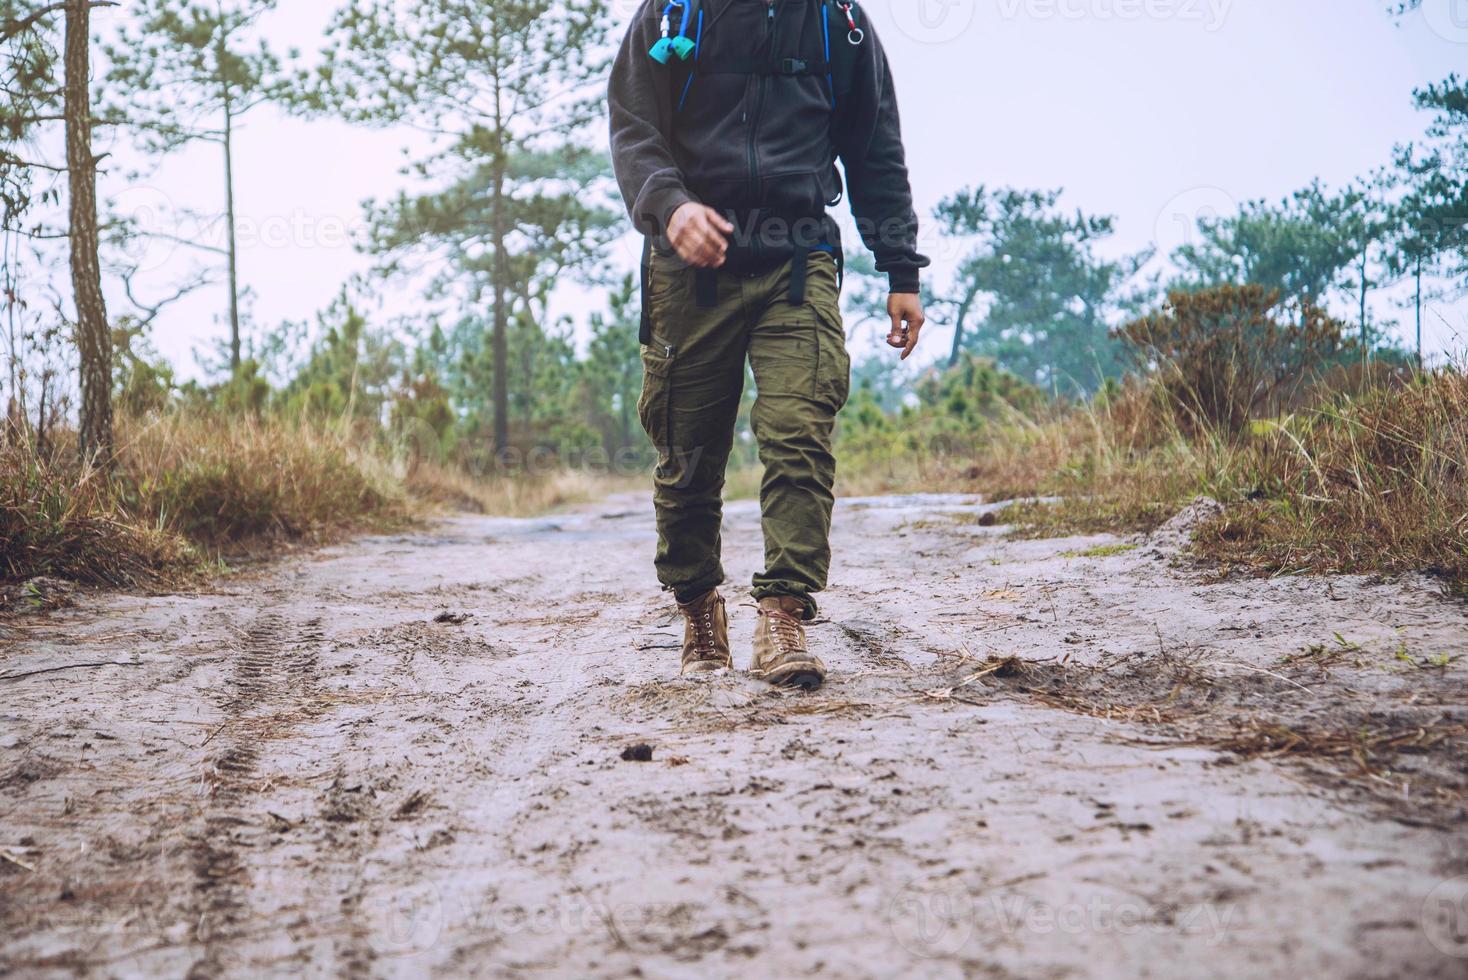 les hommes asiatiques voyagent photographie nature. voyager se détendre. marcher sur le chemin. étude de la nature dans la jungle. Thaïlande photo